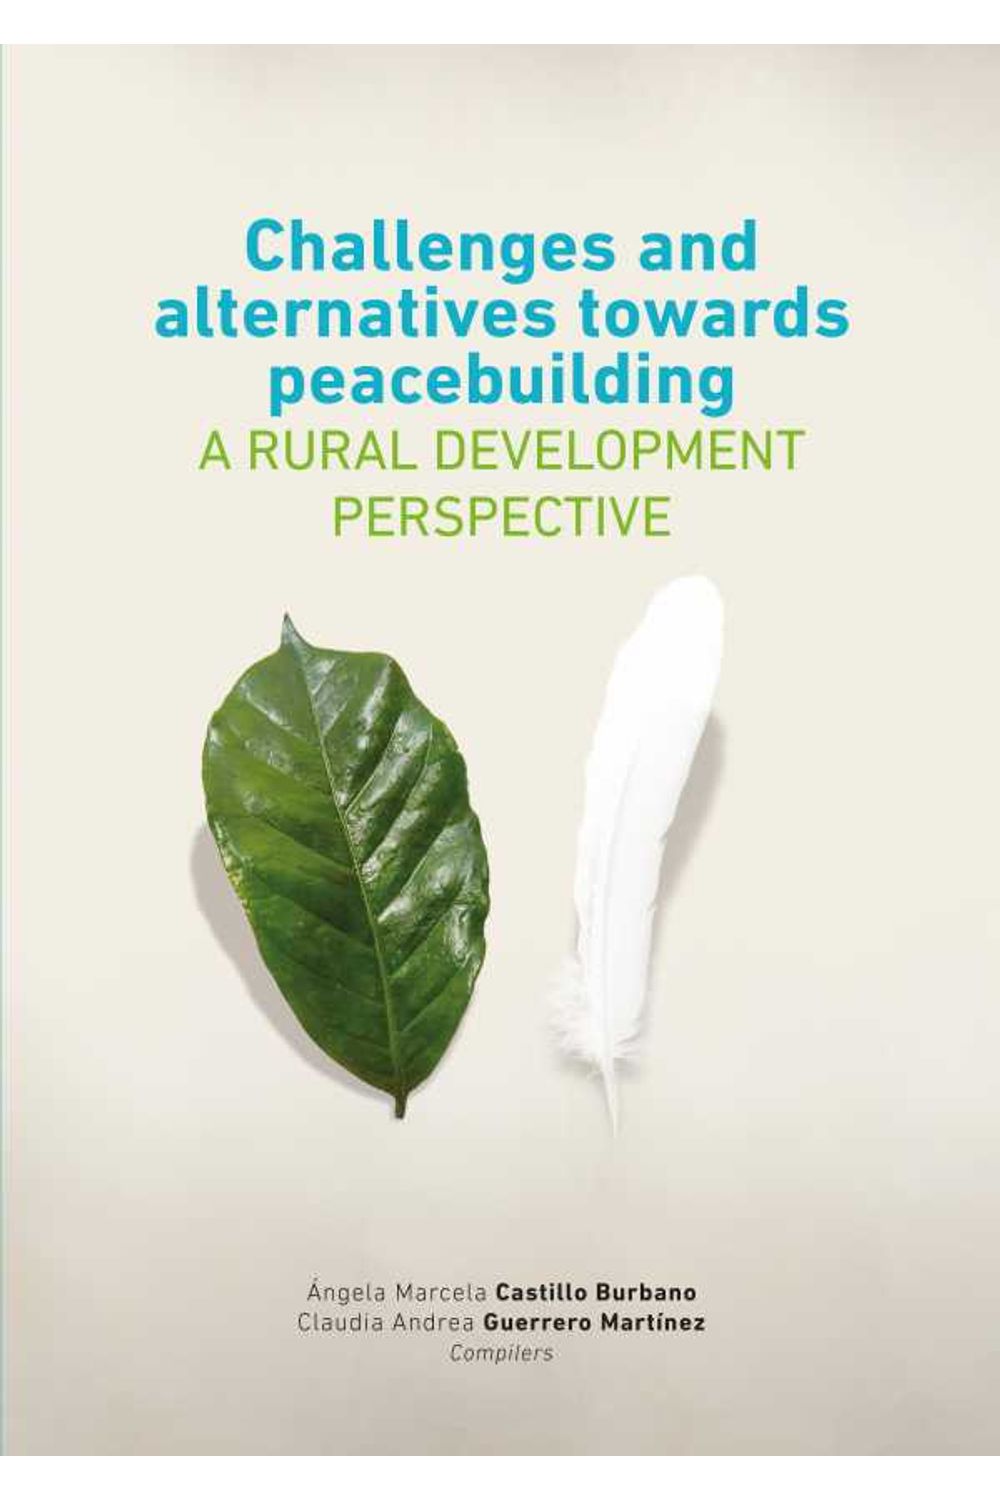 bw-challenges-and-alternatives-towards-peacebuilding-fondo-editorial-ediciones-universidad-cooperativa-de-colombia-9789587602388